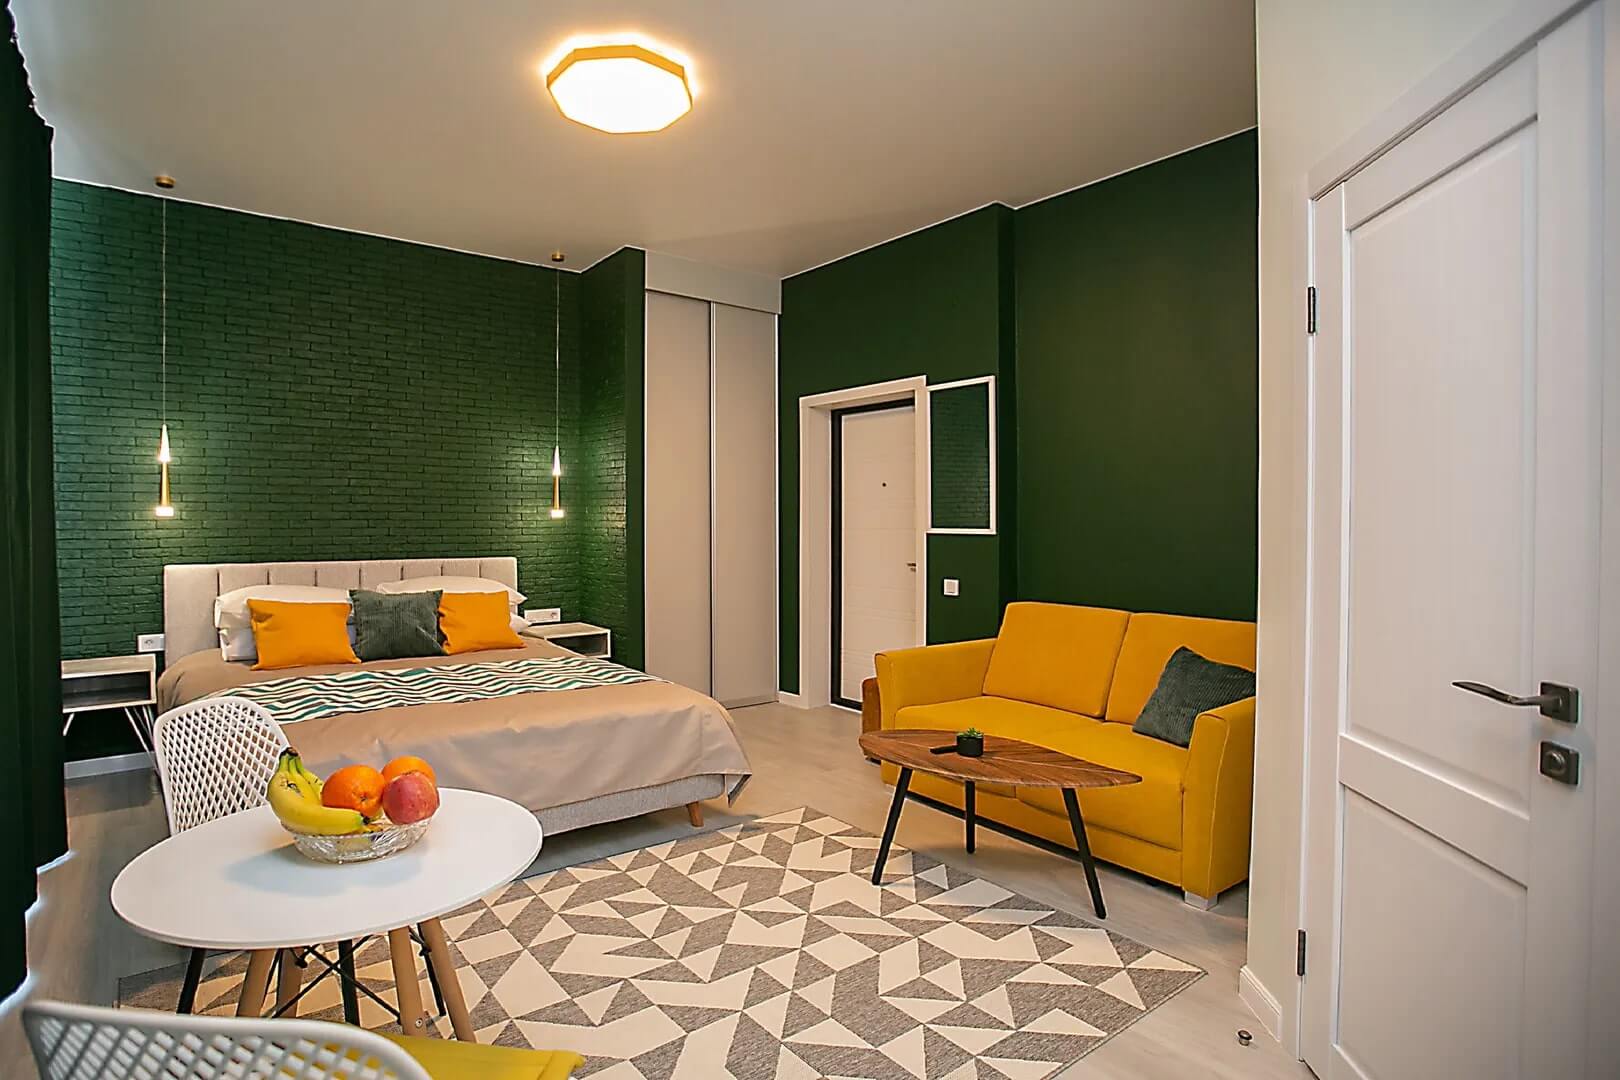 Стены в номере выкрашены в насыщенный зеленый цвет.